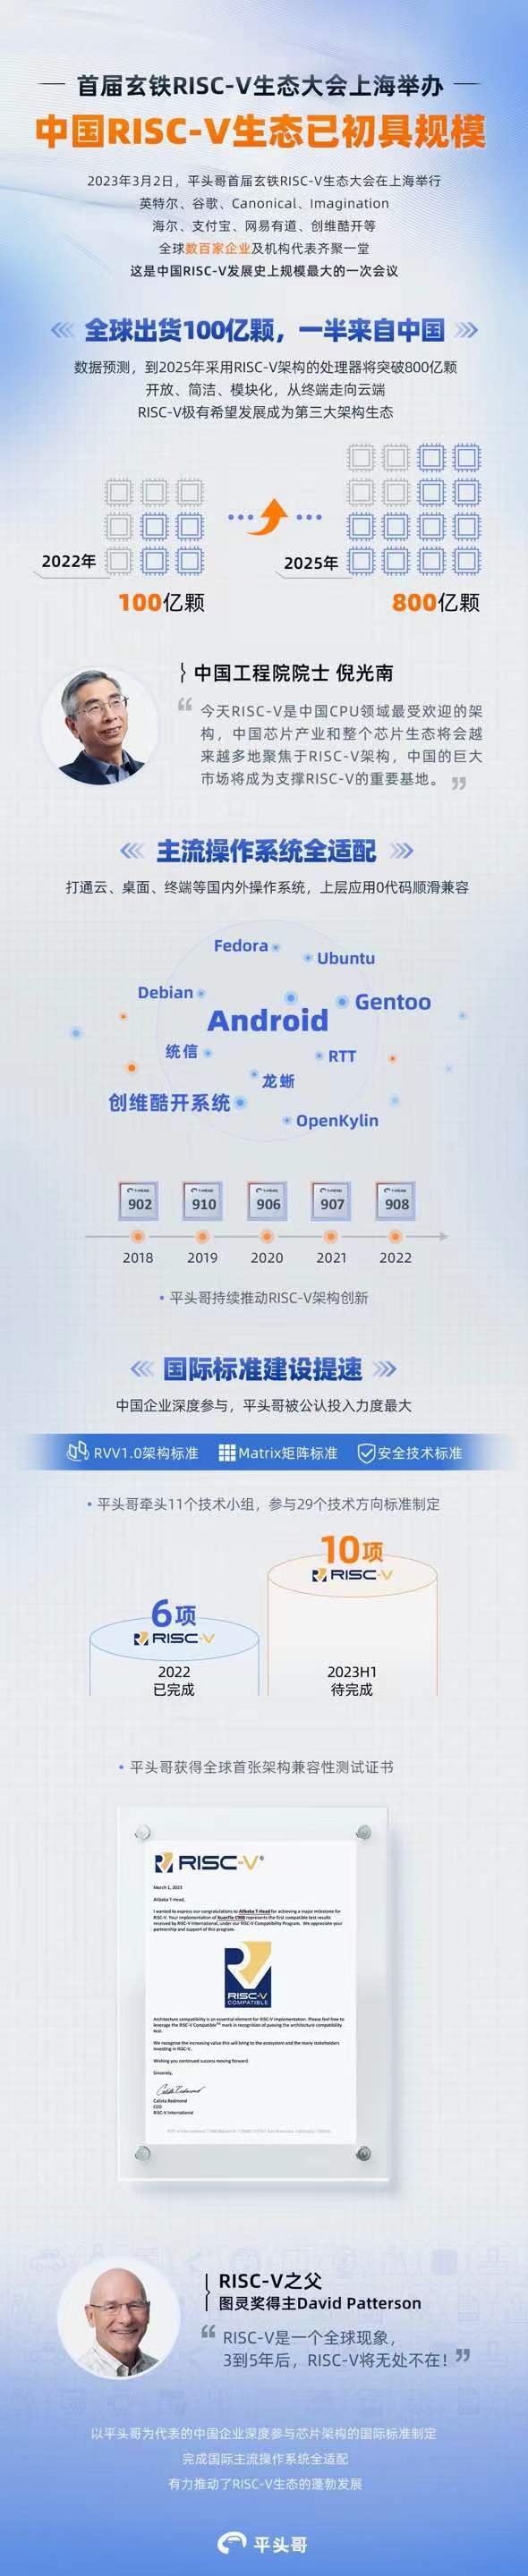 中国RISC-V生态已初具规模.jpg